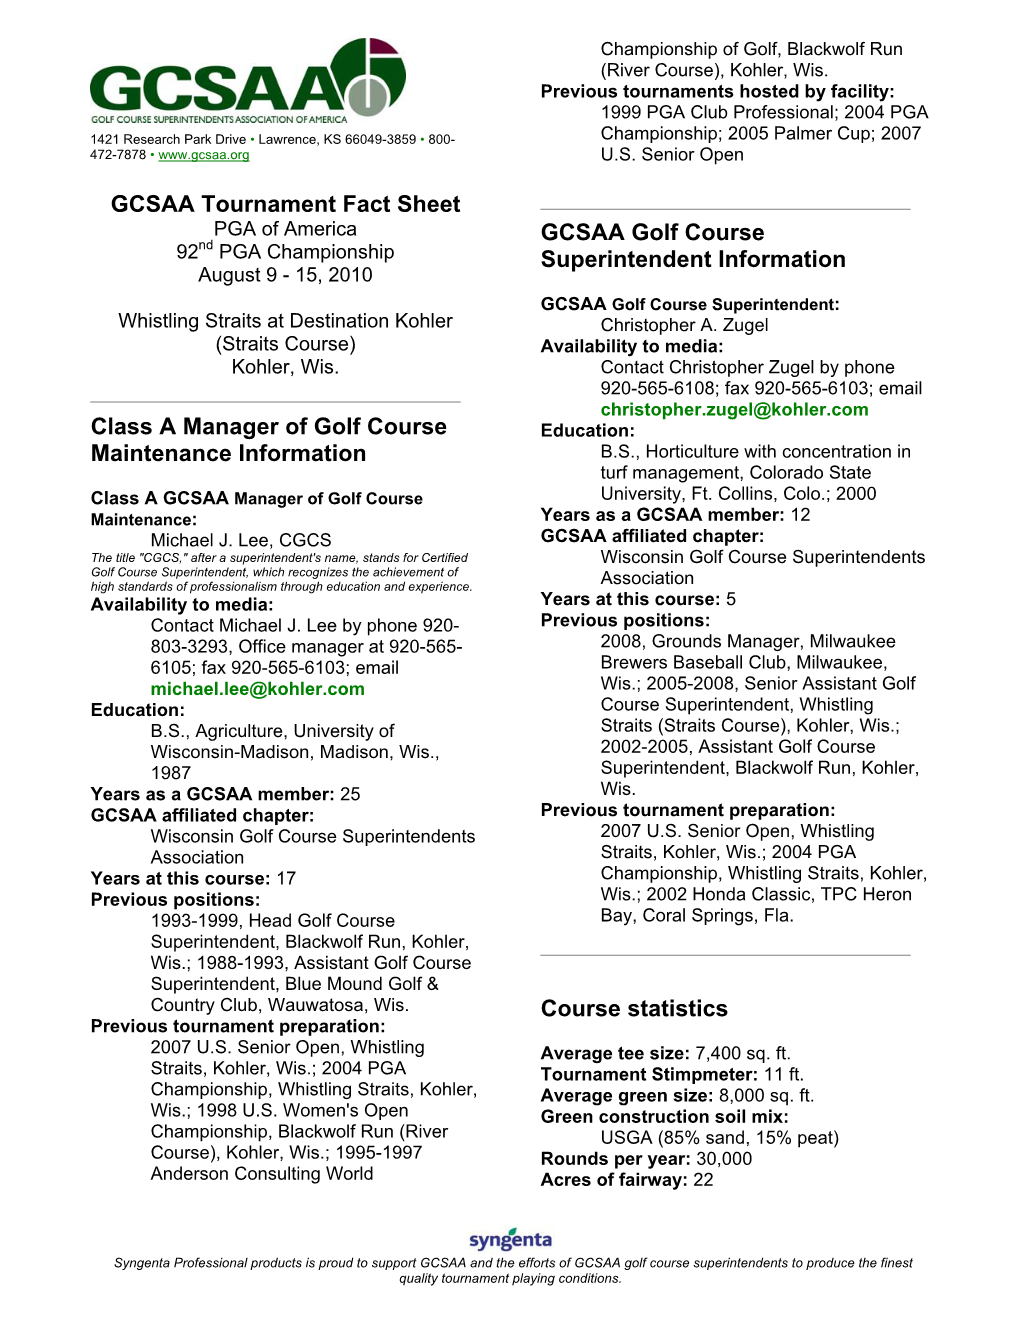 GCSAA Tournament Fact Sheet Class a Manager of Golf Course